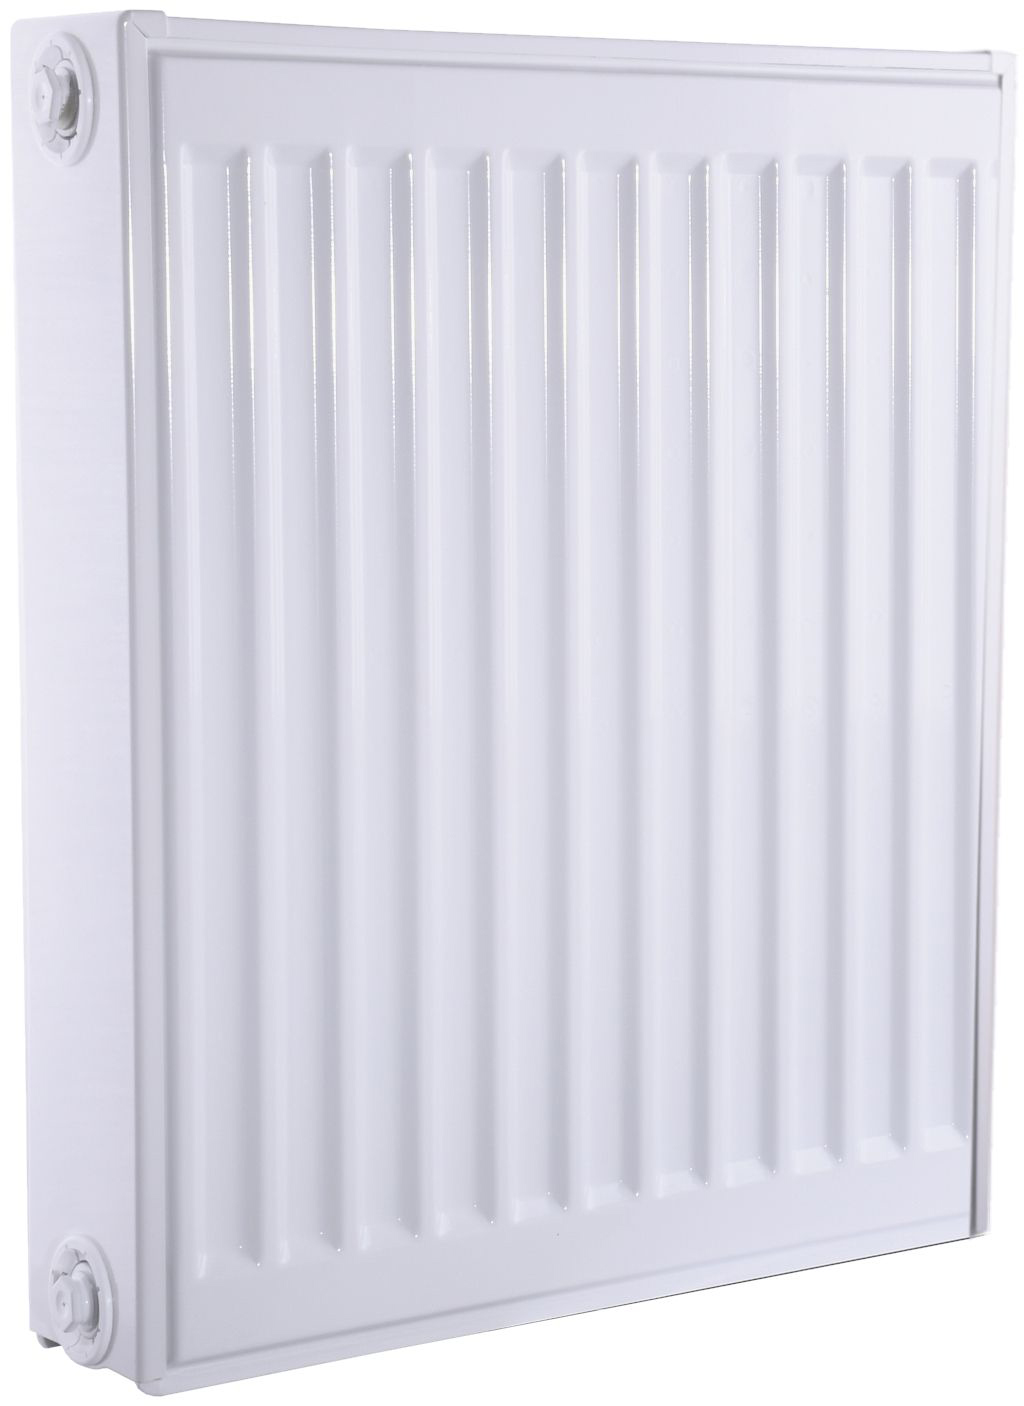 Характеристики радиатор для отопления Queen Therm 22 бок 500x400